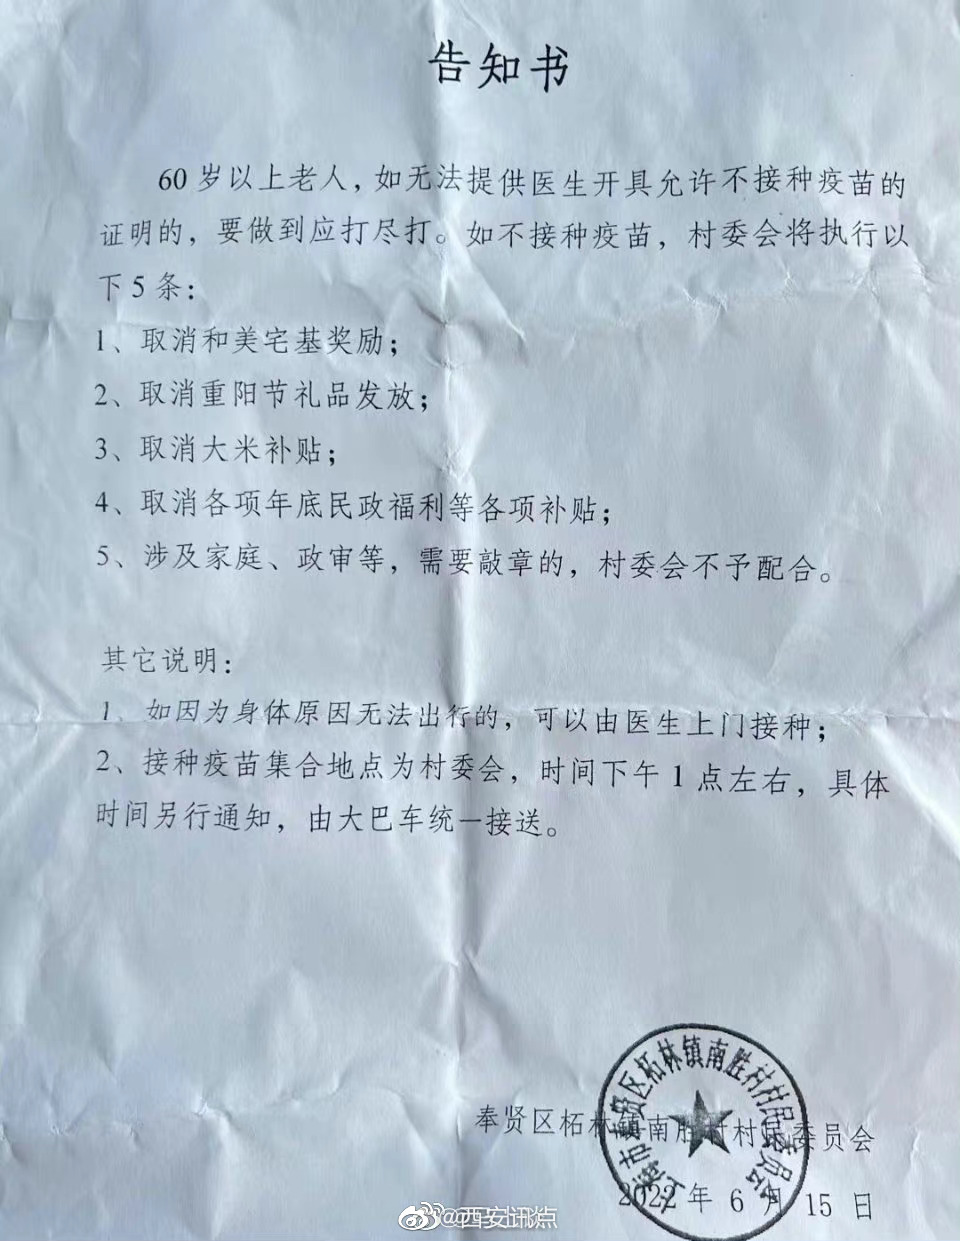 上海市奉贤区拓林镇南胜村督促老人打新冠疫苗的通知……